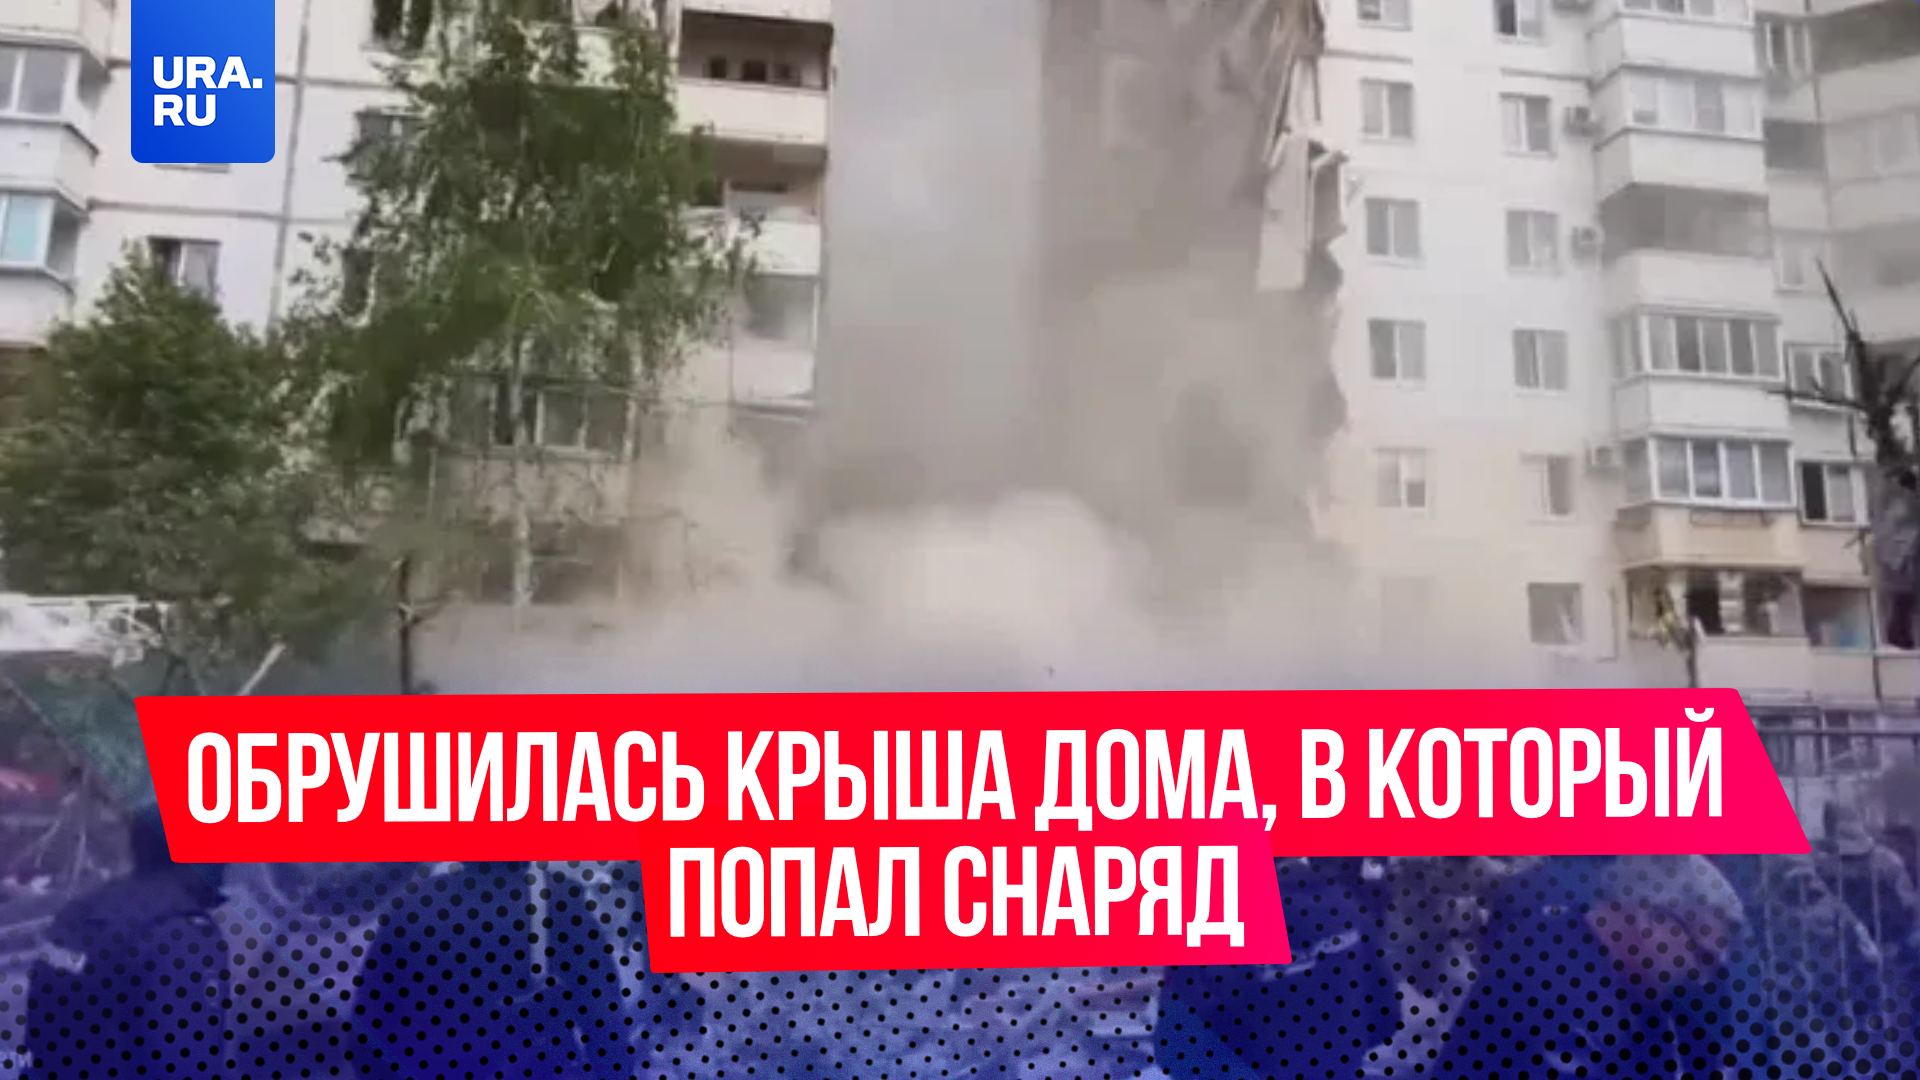 В Белгороде обрушились чердачный этаж и крыша подъезда, в который попал снаряд